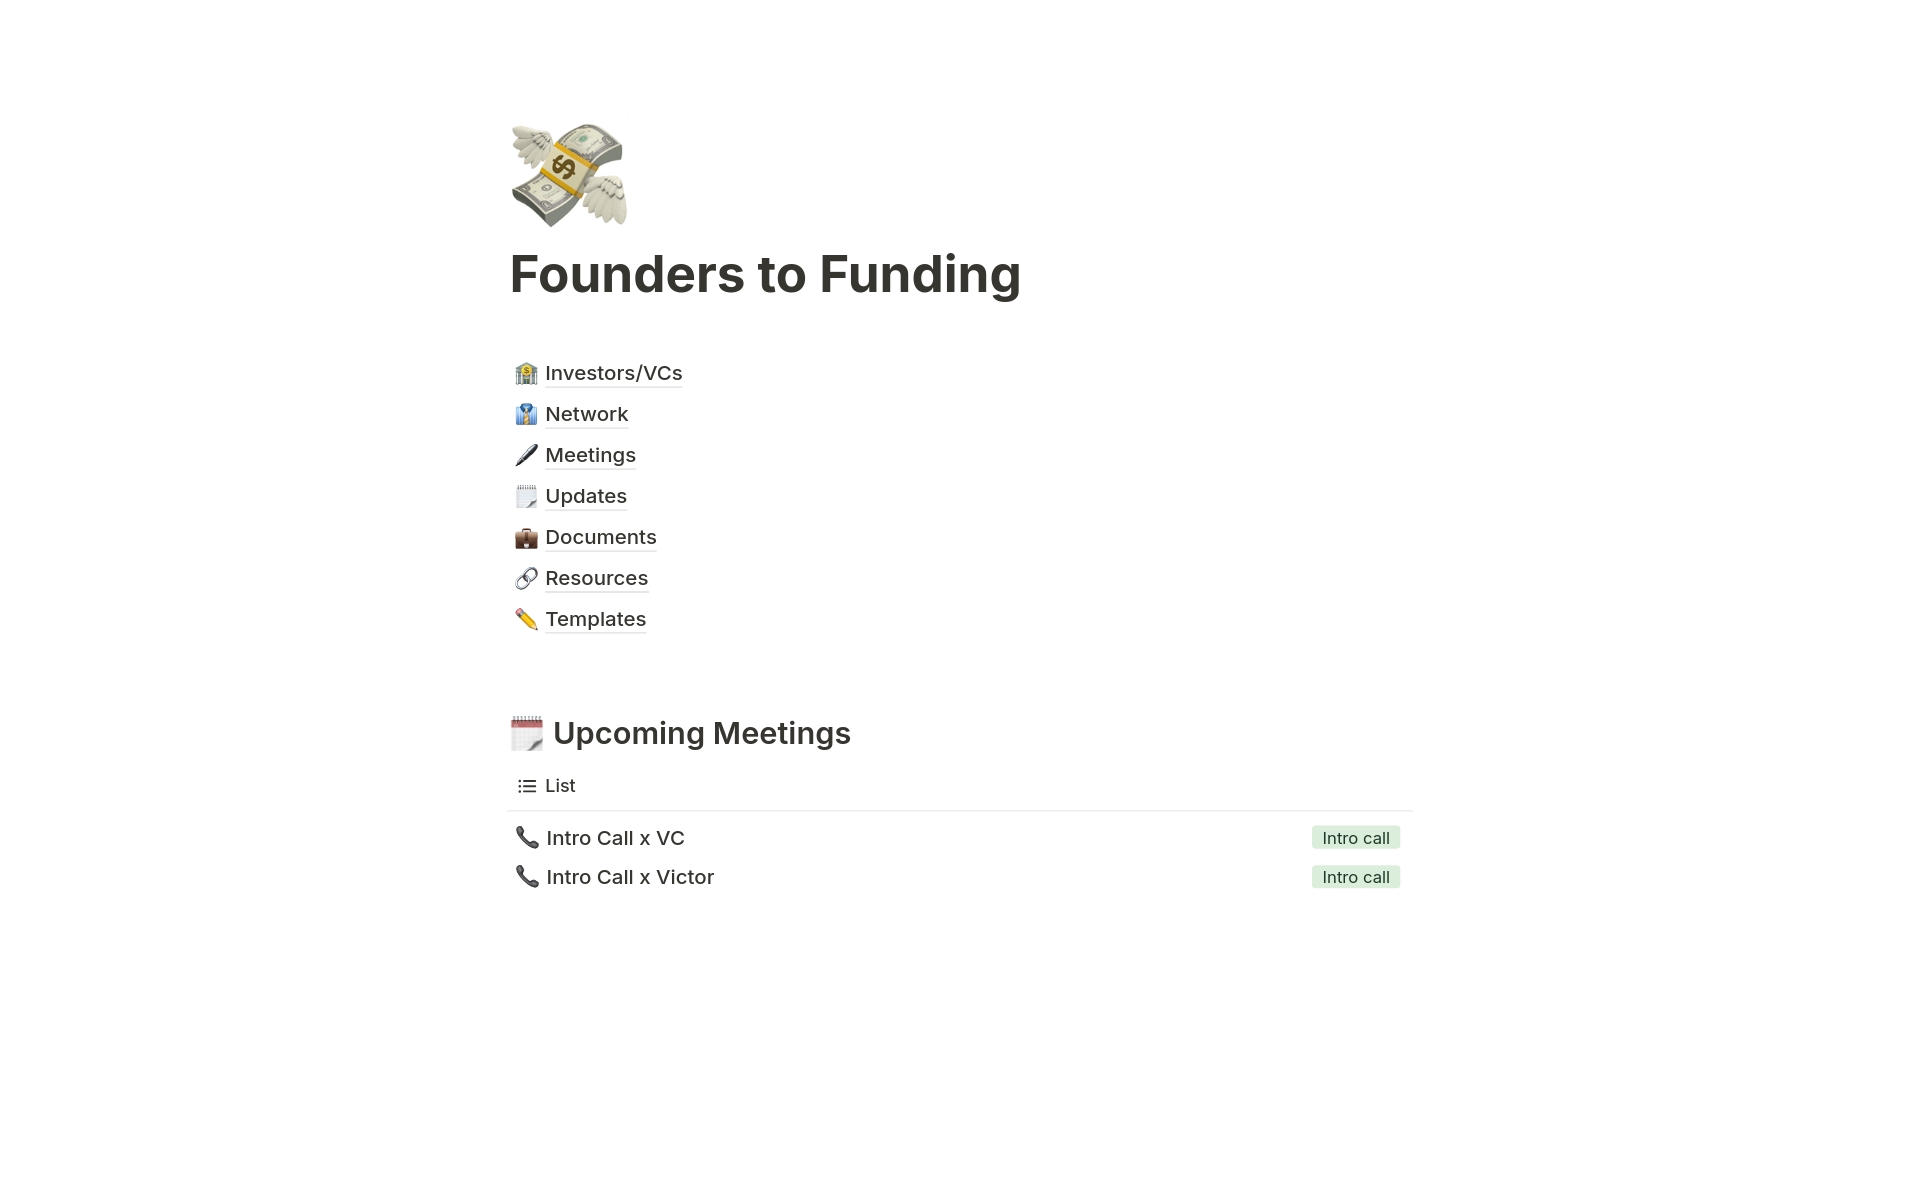 Uma prévia do modelo para Founders to Funding